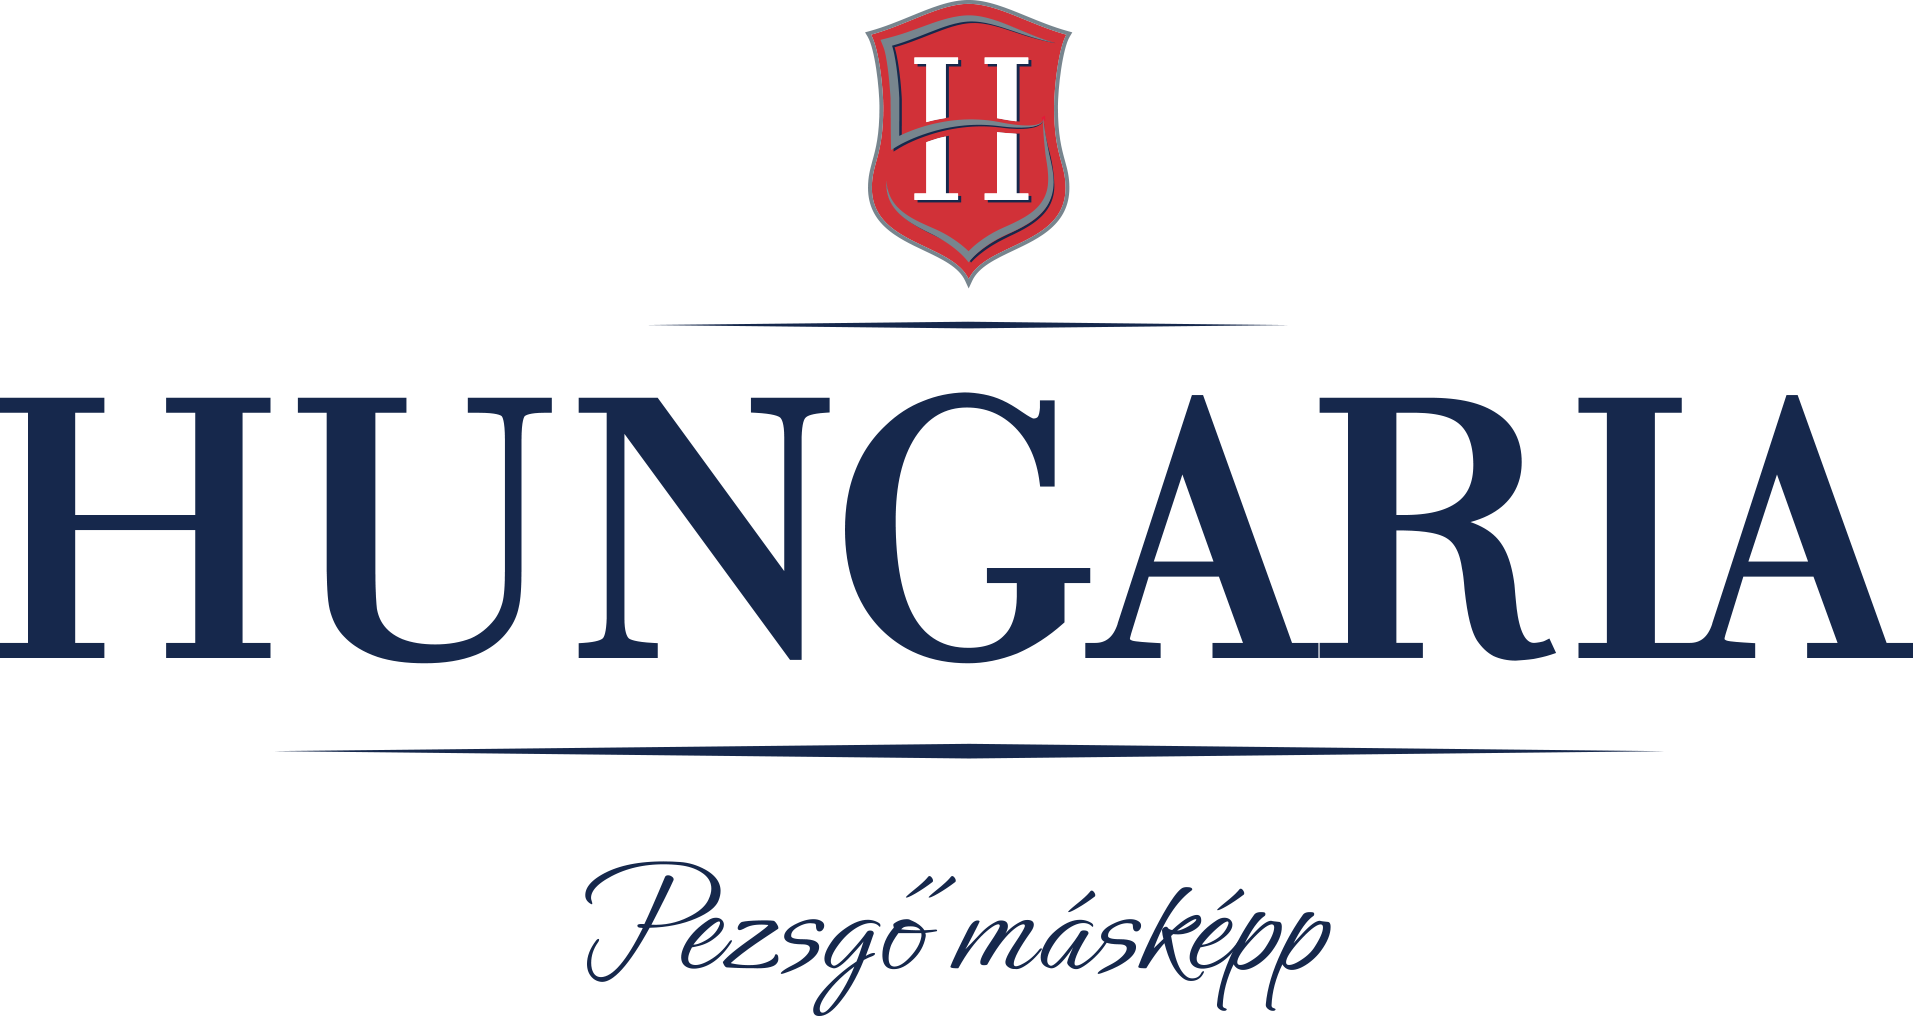 Hungaria Pezsgo